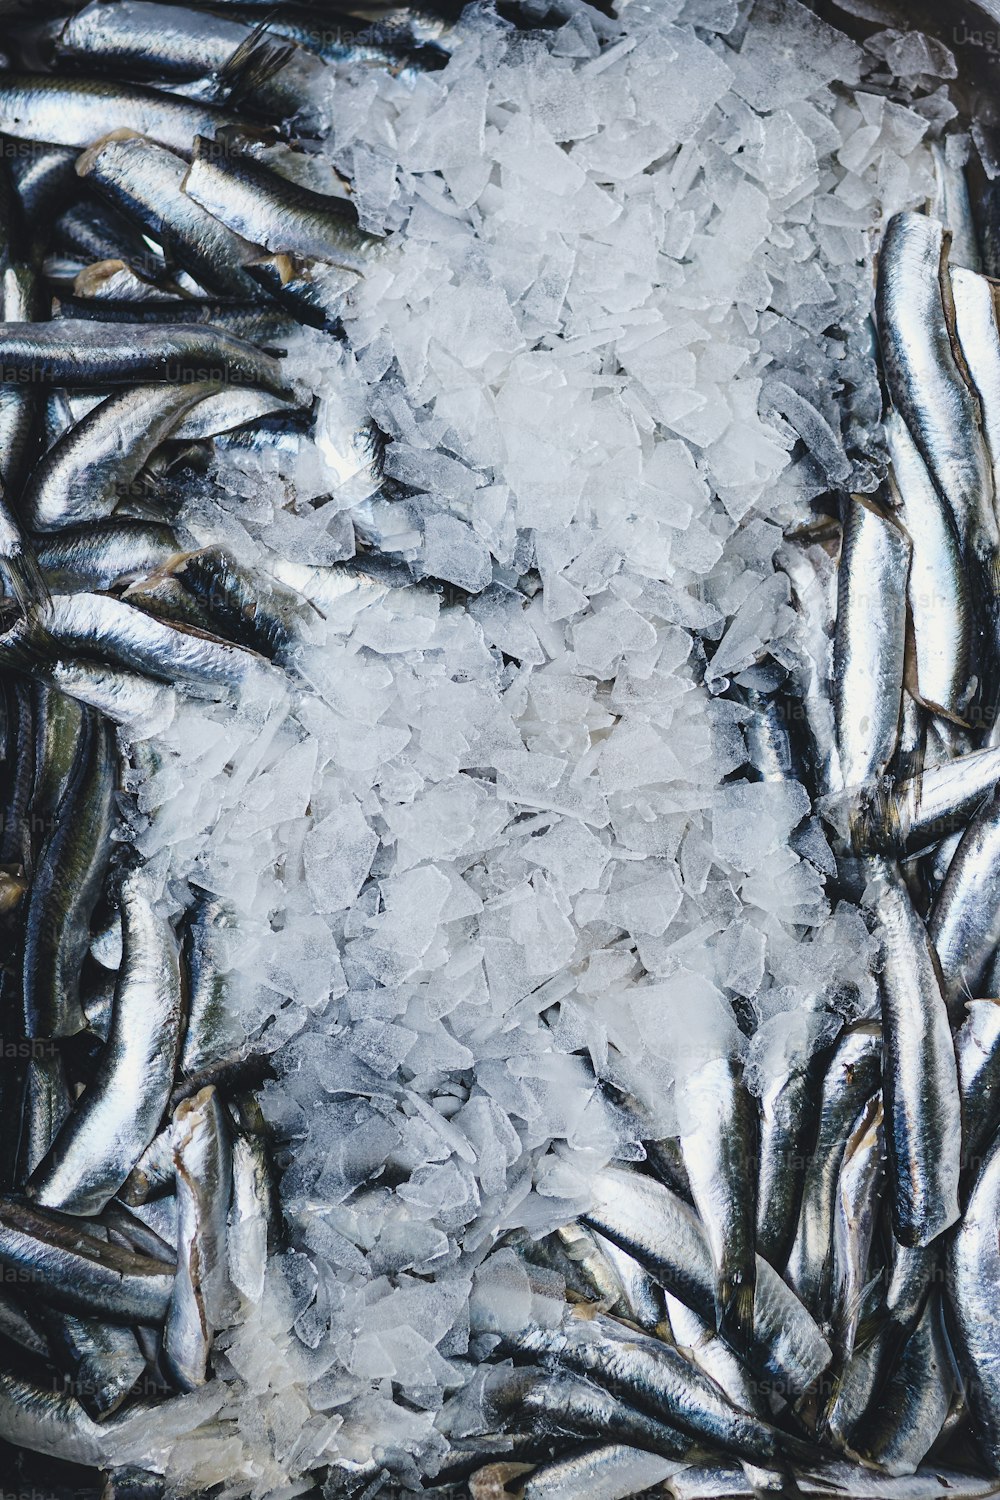 Ein Haufen Fische sitzt auf einem Eishaufen